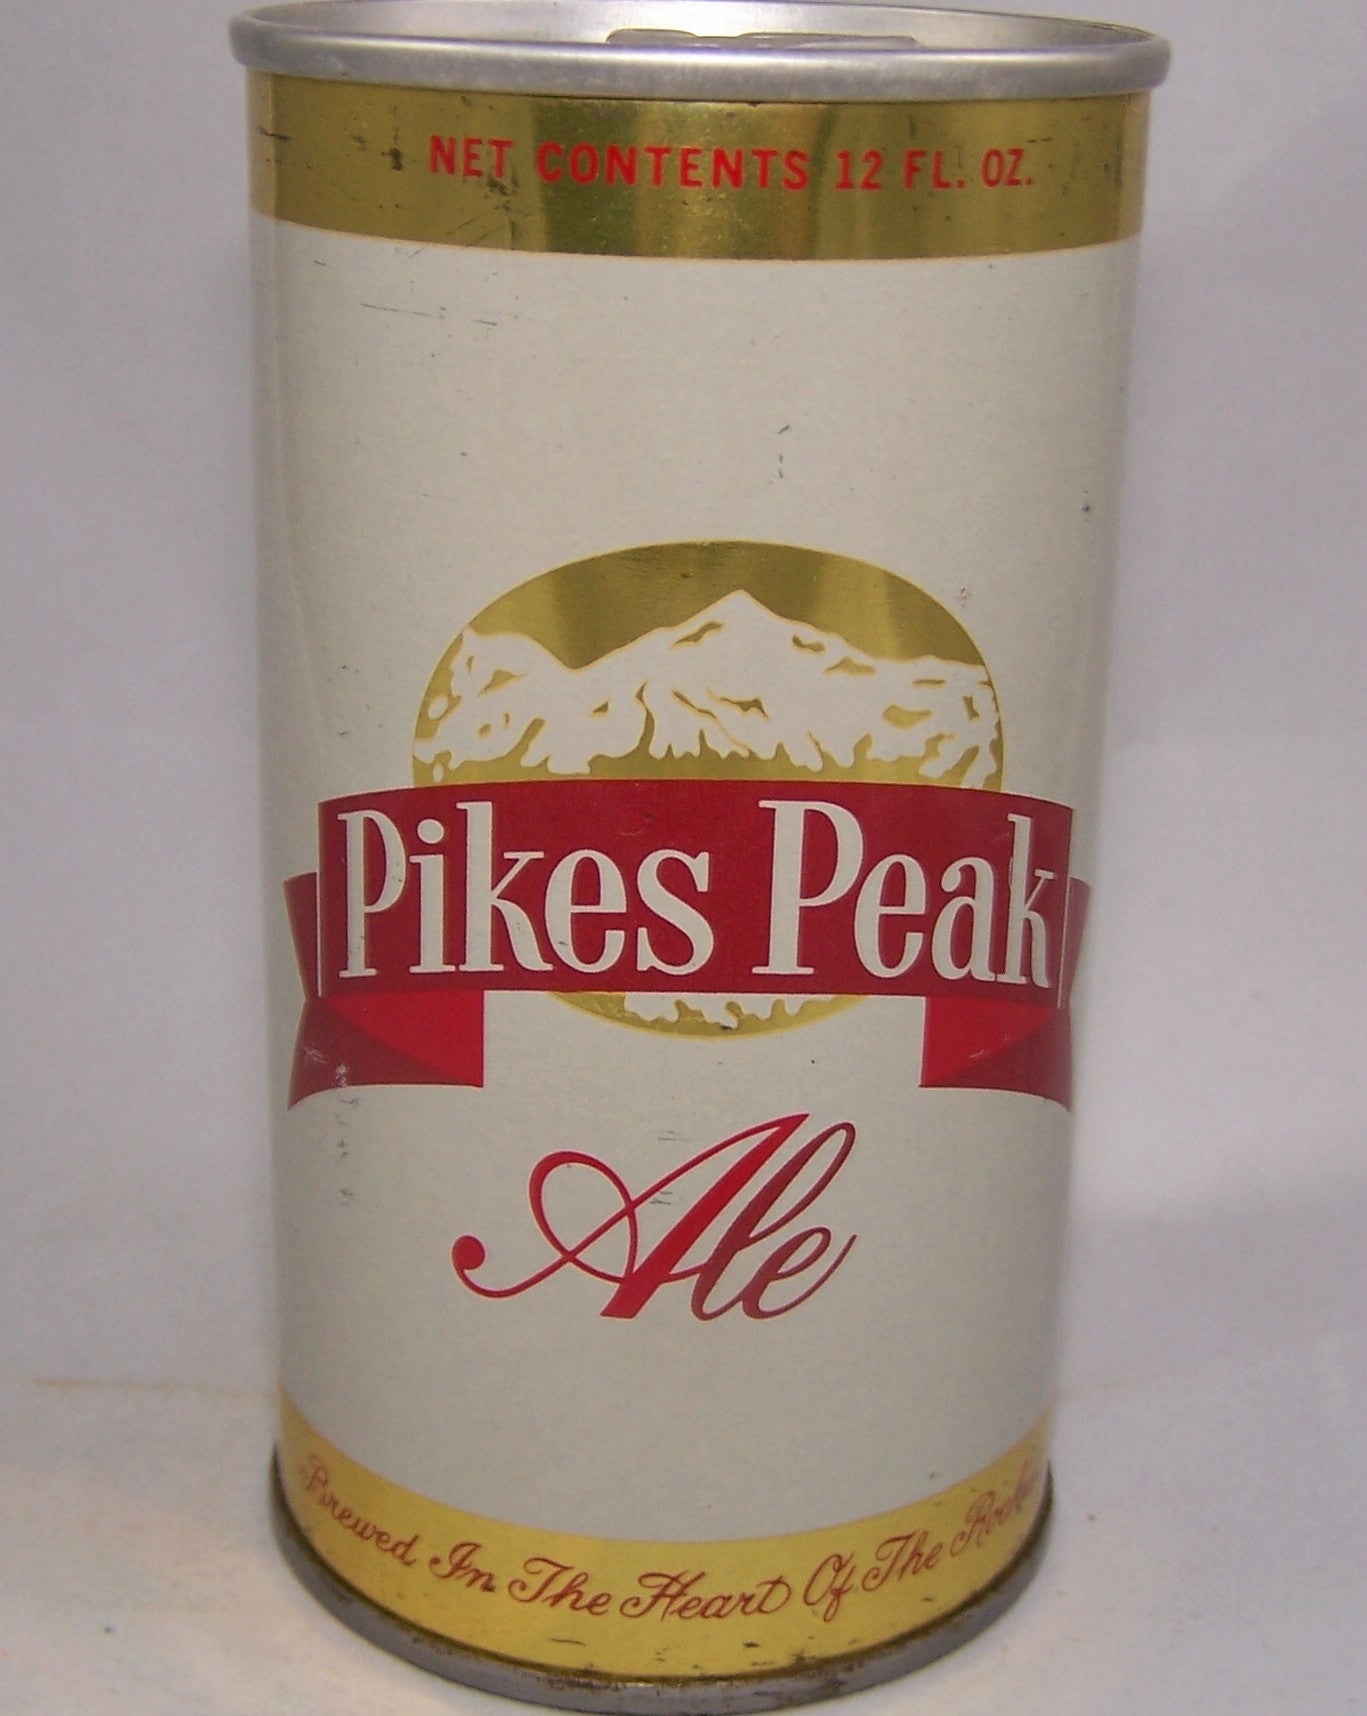 Pikes Peak Ale, USBC II 109-25, Grade 1 Sold on 03/25/18